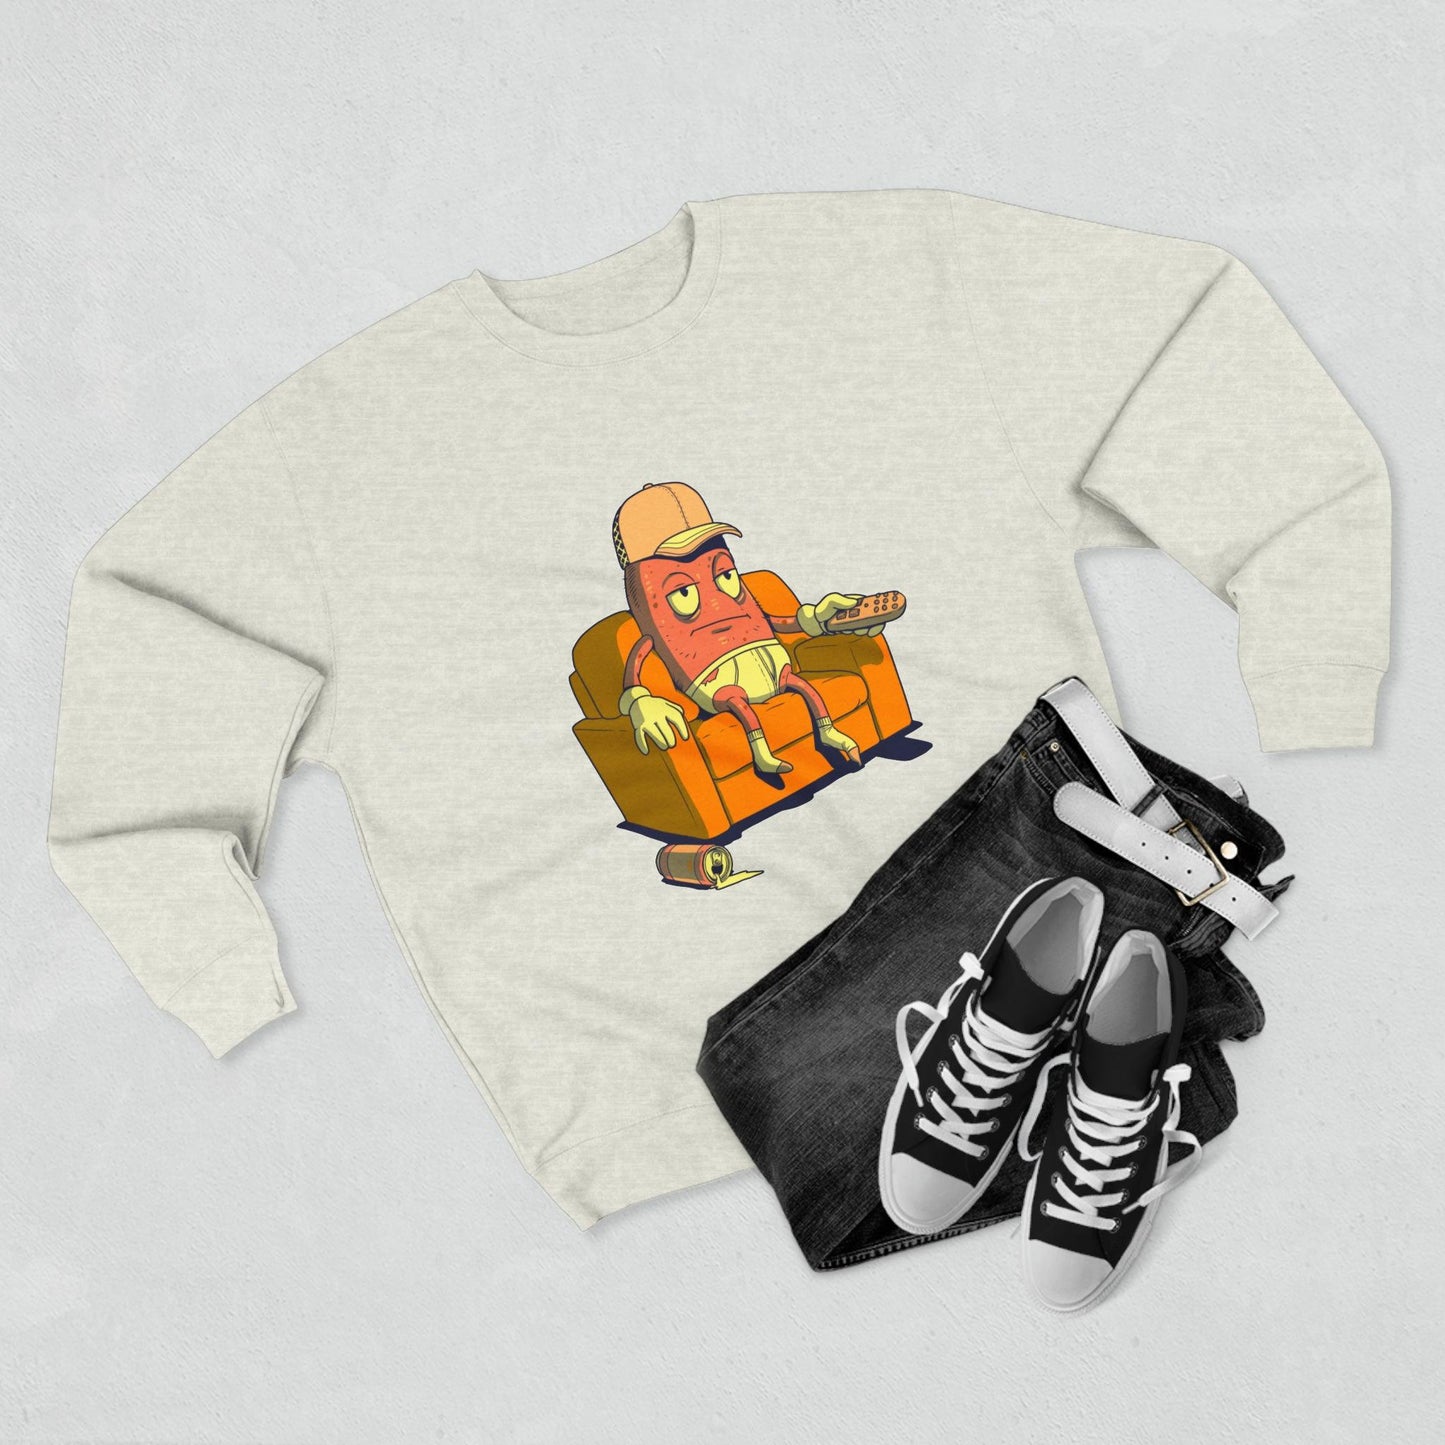 Couch Potato - Unisex Crewneck Sweatshirt - Shaneinvasion